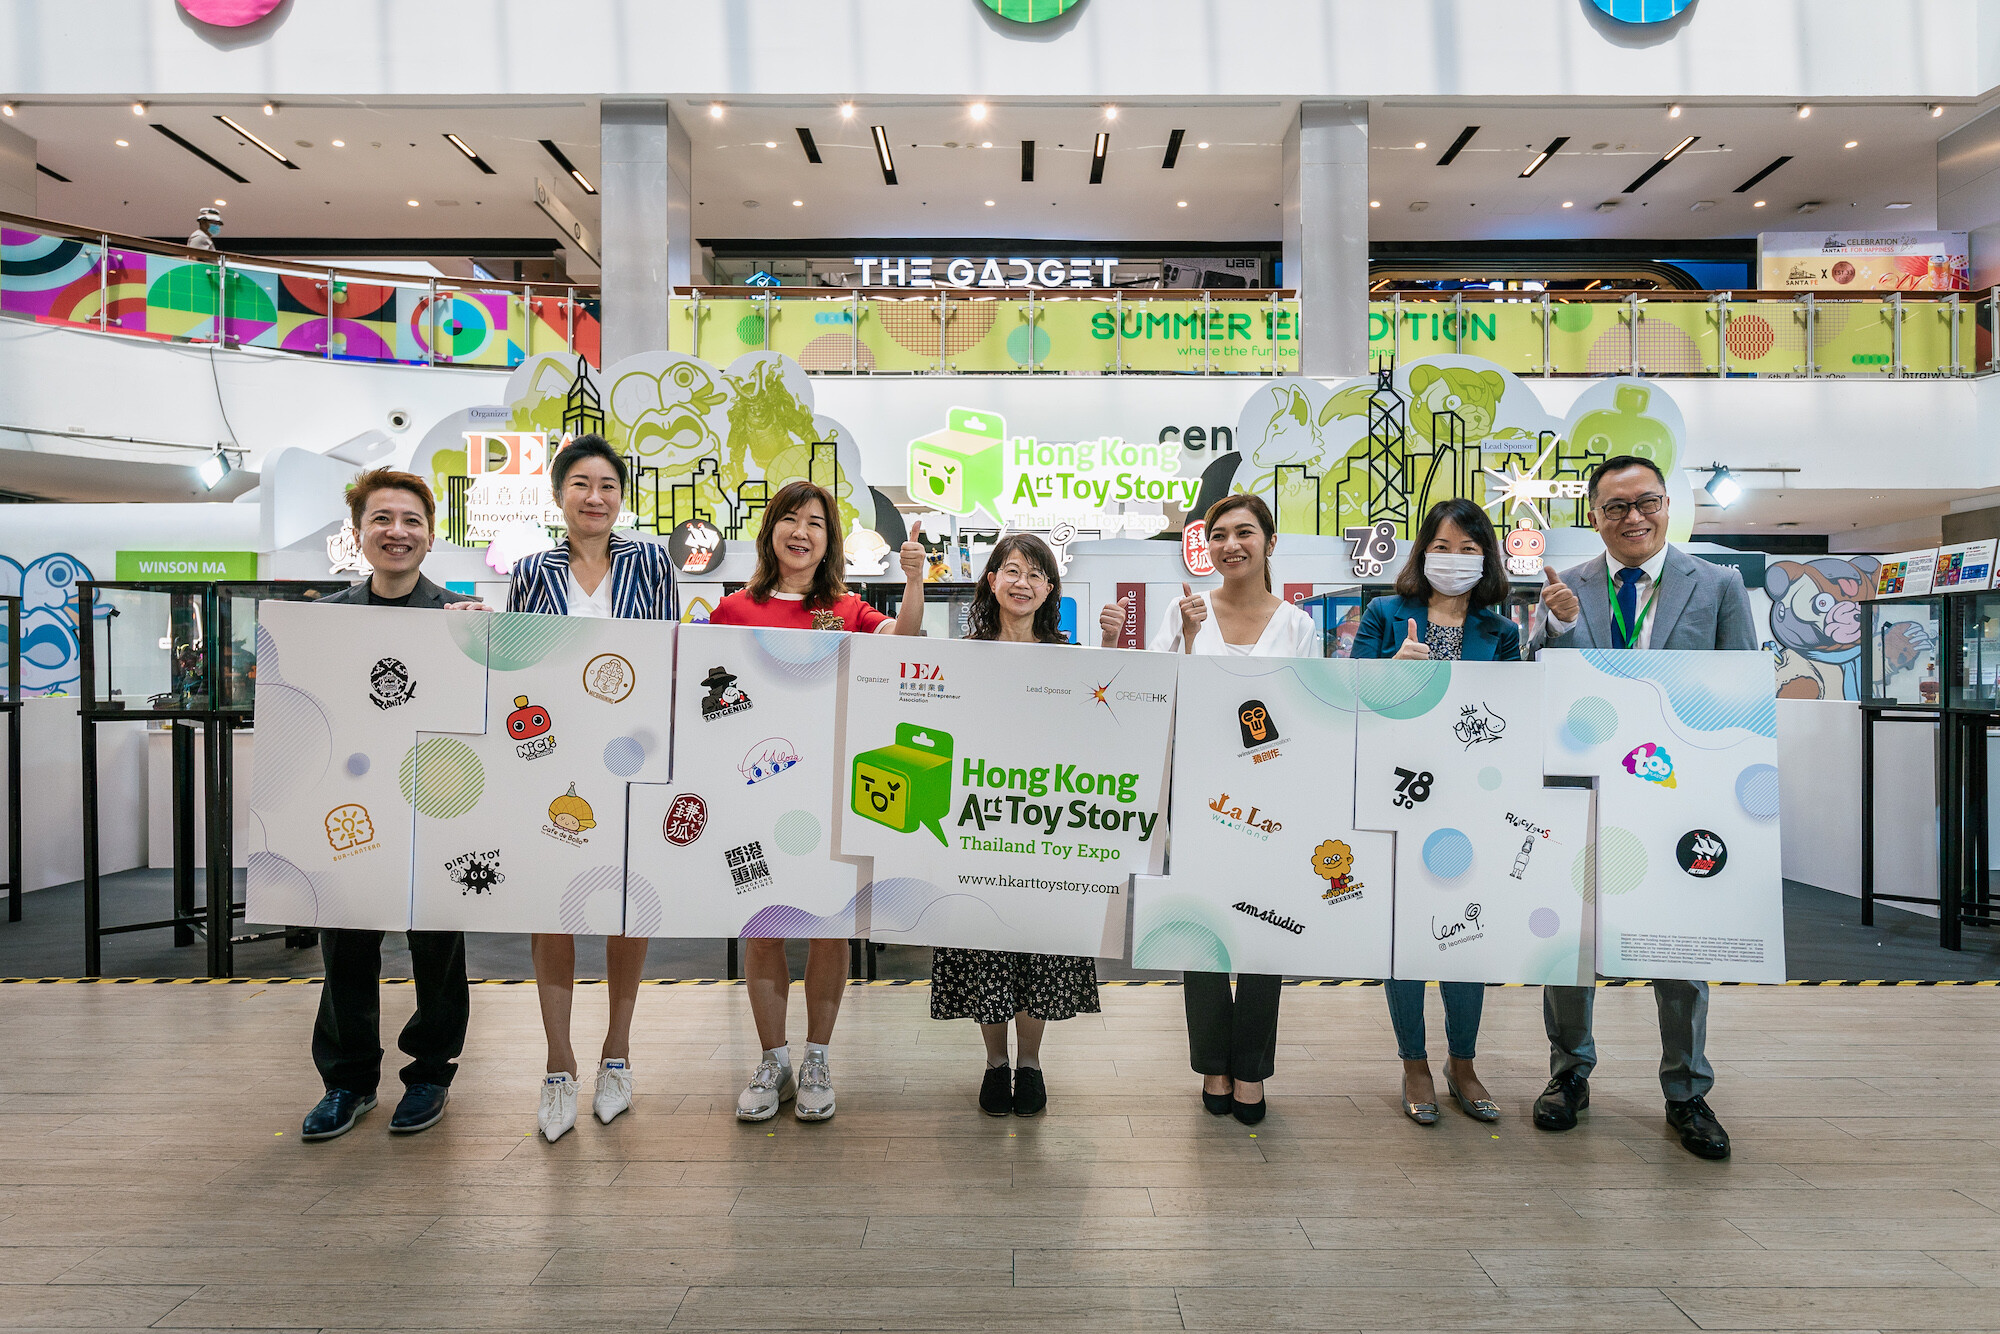 20 ศิลปินฮ่องกงบินลัดฟ้ามาร่วมงาน Thailand Toy Expo 2023 พร้อมเปิด Hong Kong Pavilion ต้อนรับแฟนอาร์ตทอยอย่างยิ่งใหญ่ ก่อนจะเดินทางกลับไปด้วยรอยยิ้มและความประทับใจ